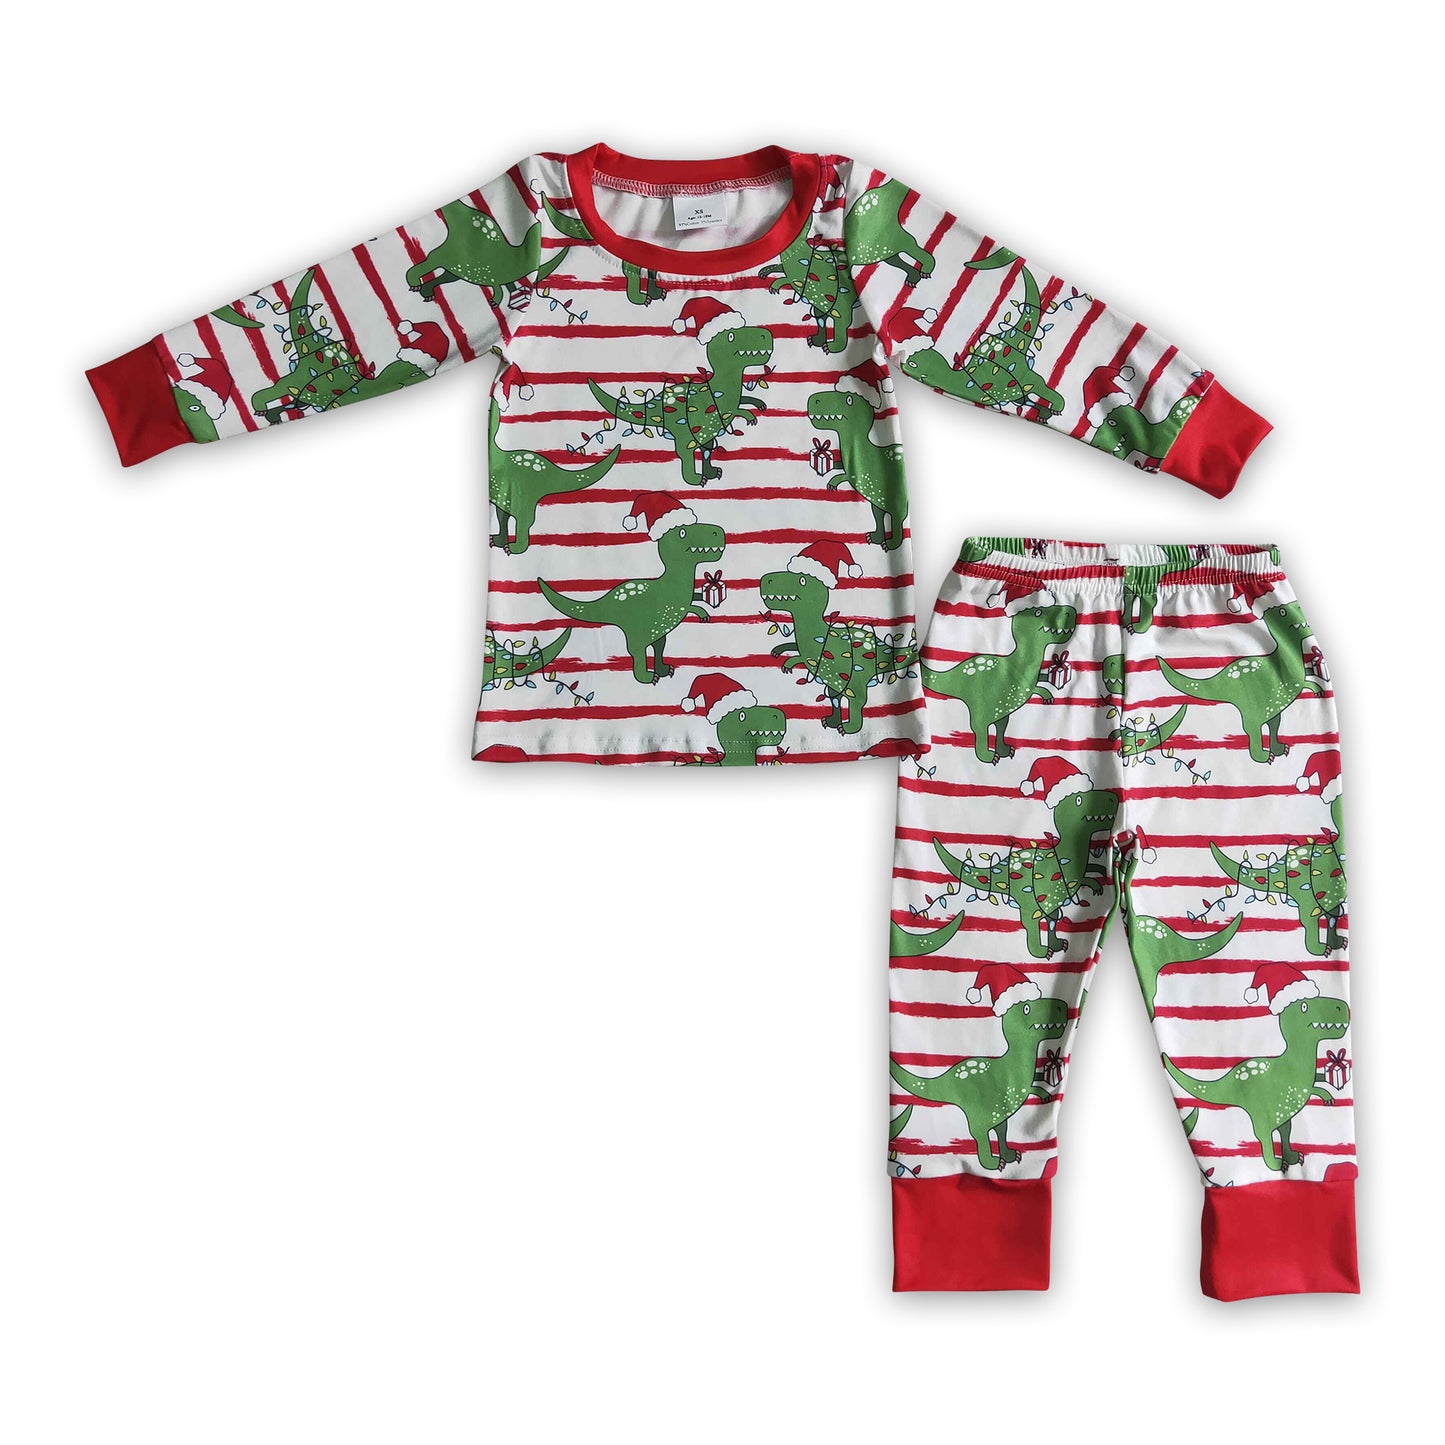 Dinosaur stripe kids boy Christmas pajamas